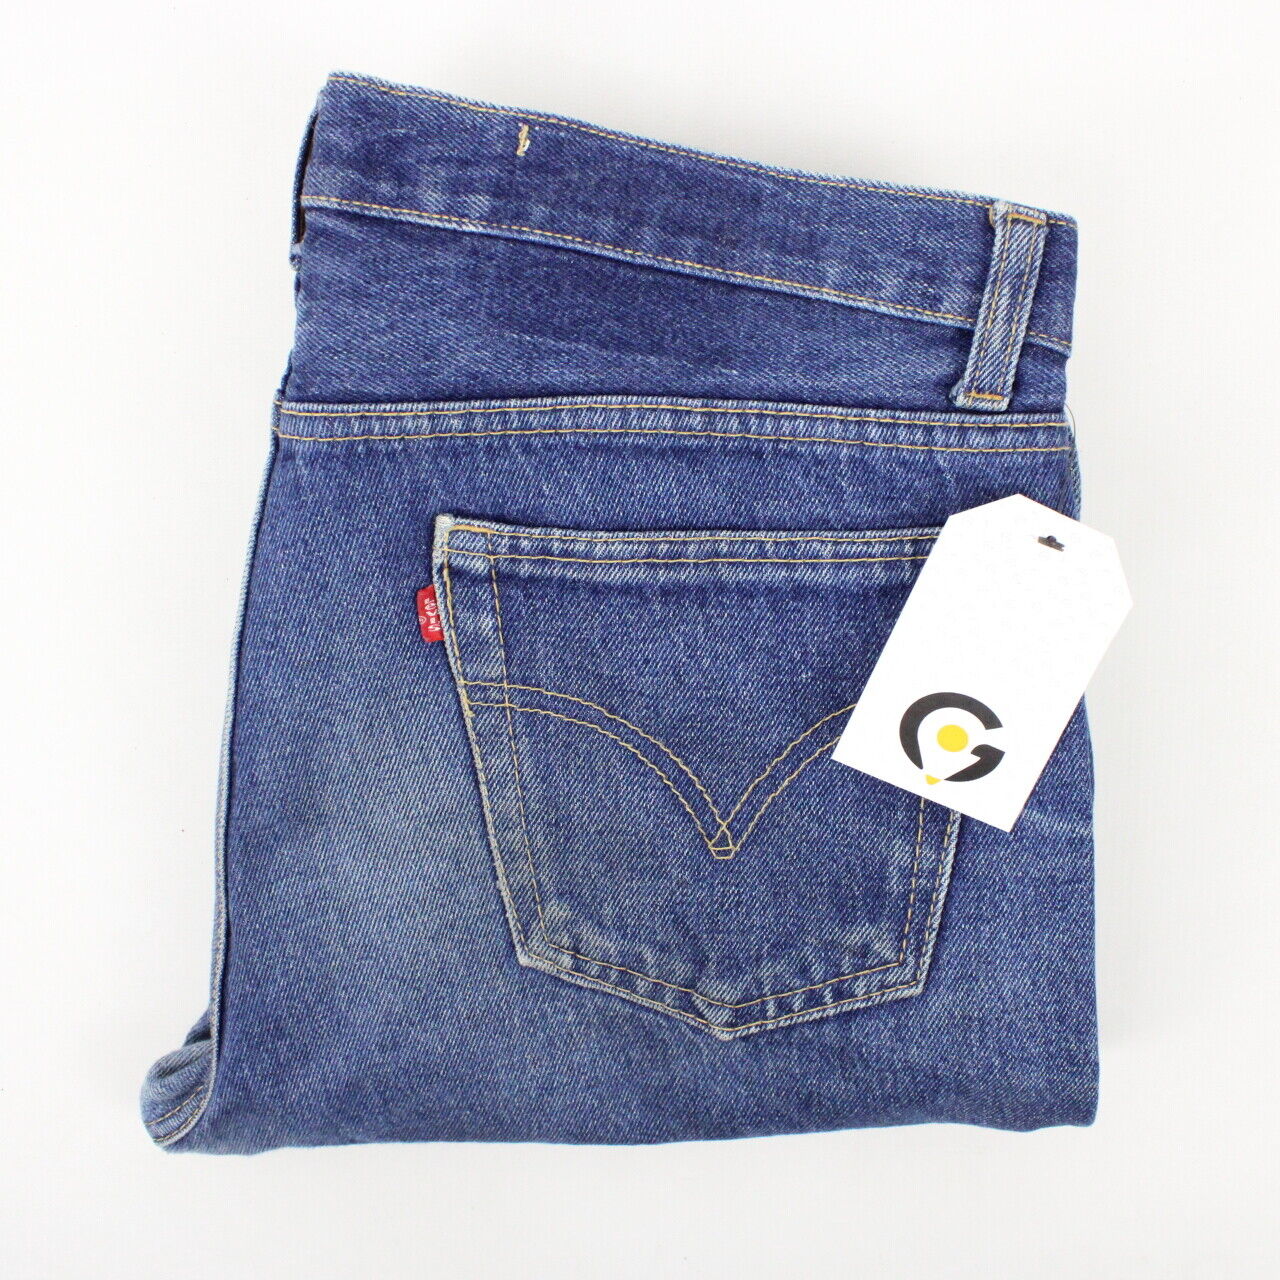 LEVIS 501 Jeans Mid Blue | W34 L34